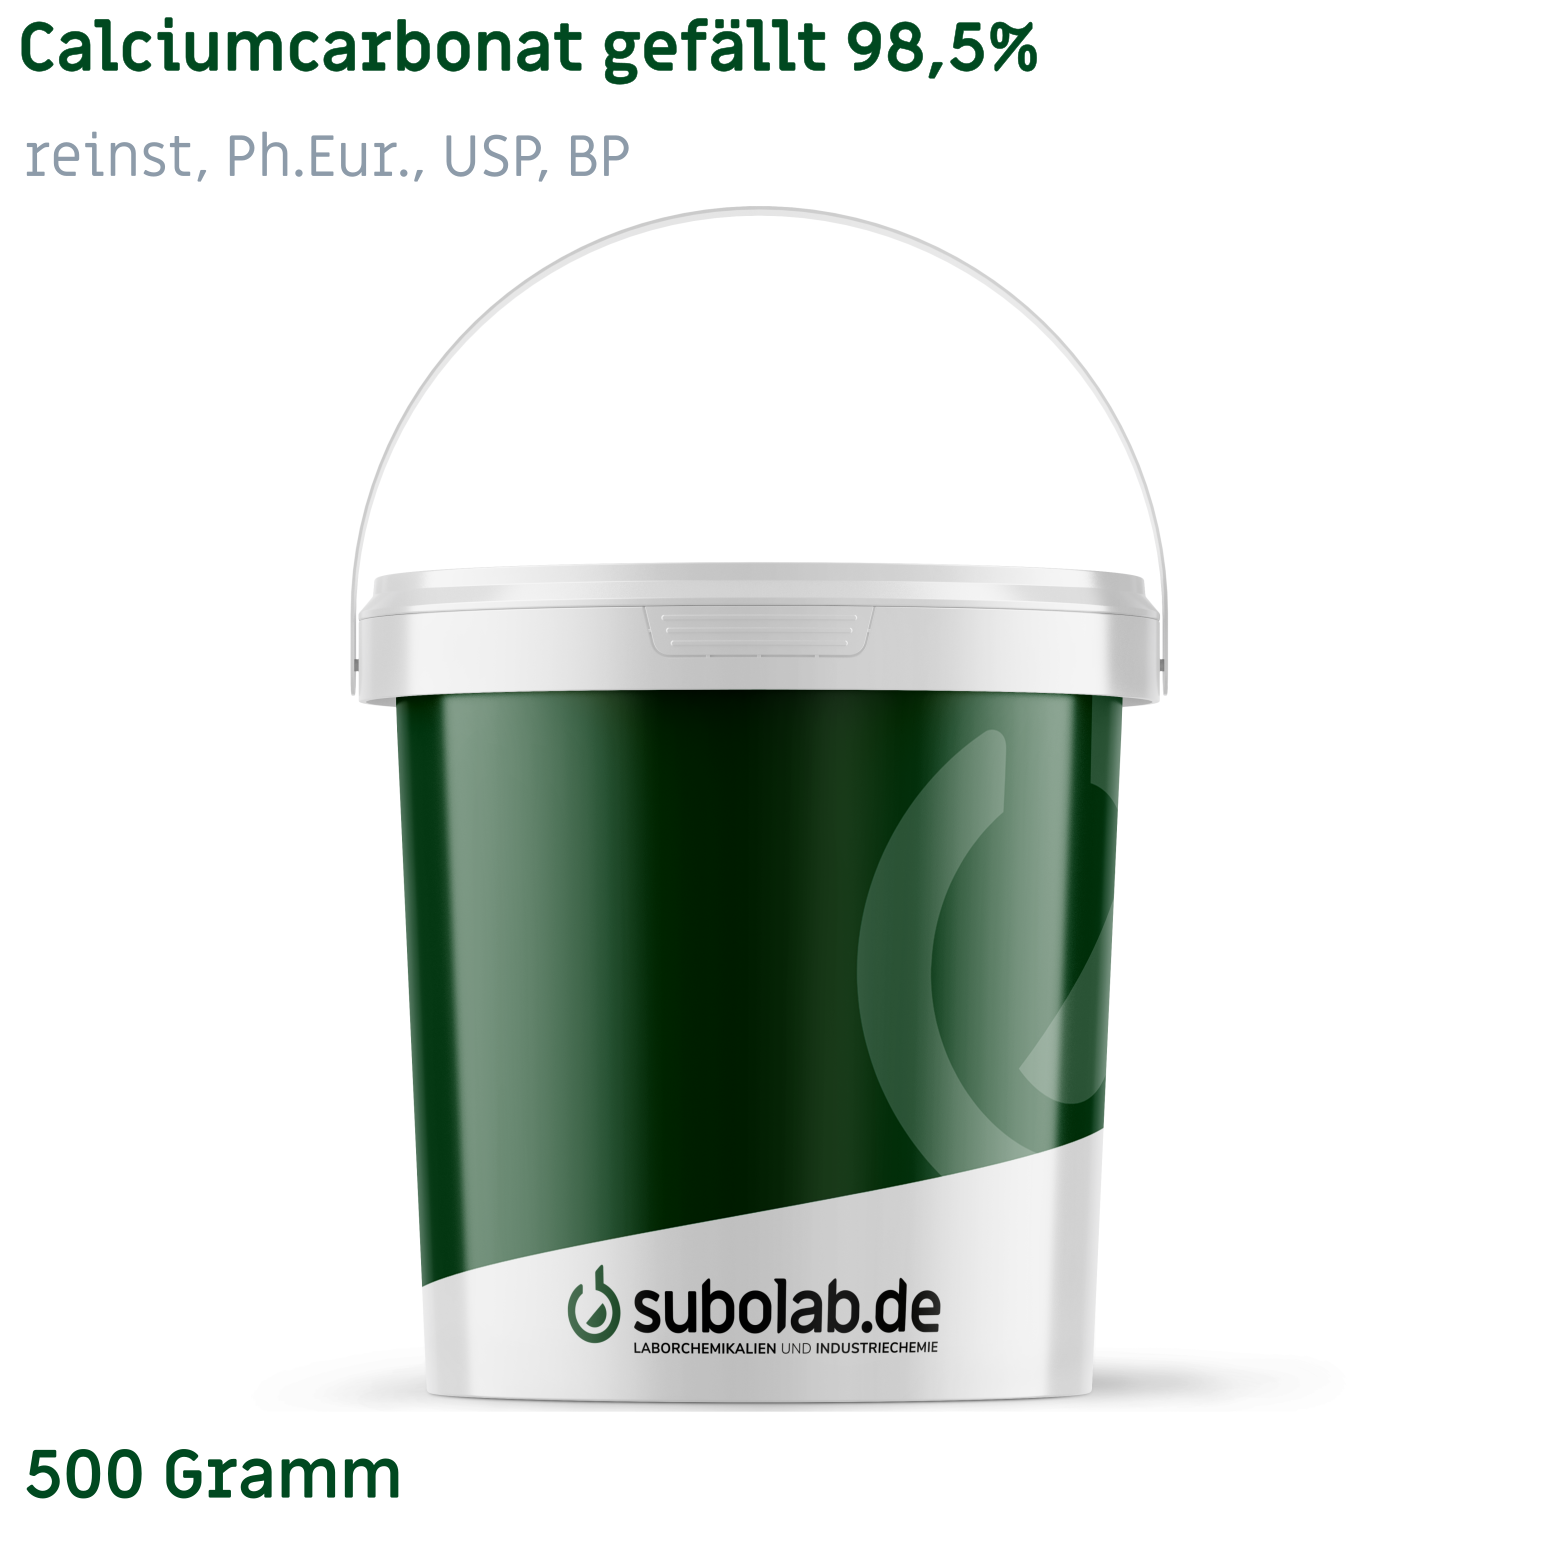 Bild von Calciumcarbonat gefällt 98,5% reinst, Ph.Eur., USP, BP (500 Gramm)